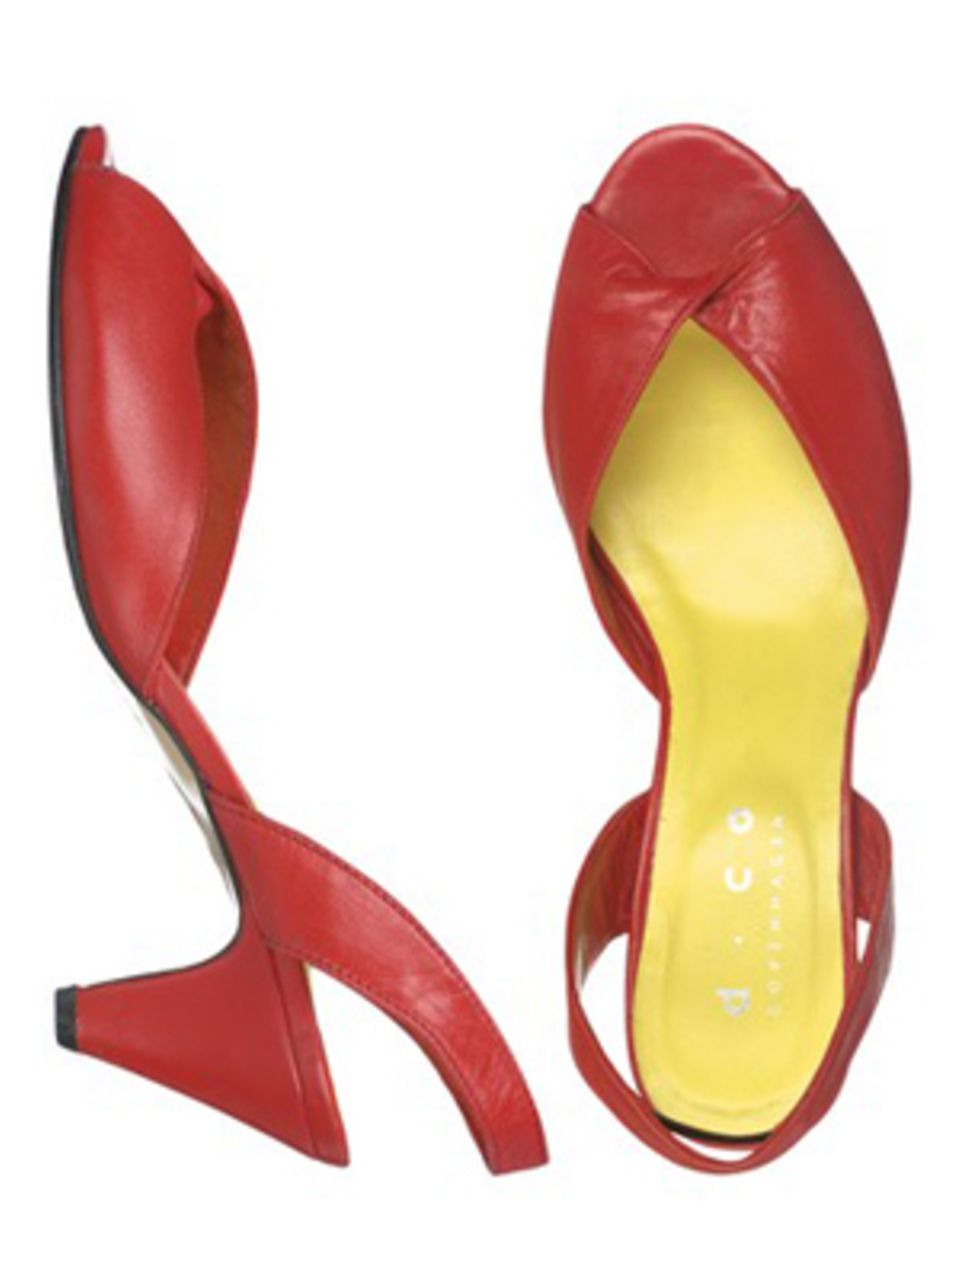 Rote Sandalette mit halbhohem Absatz von Dico, um 124,99 Euro. Über www.frontlineshop.com